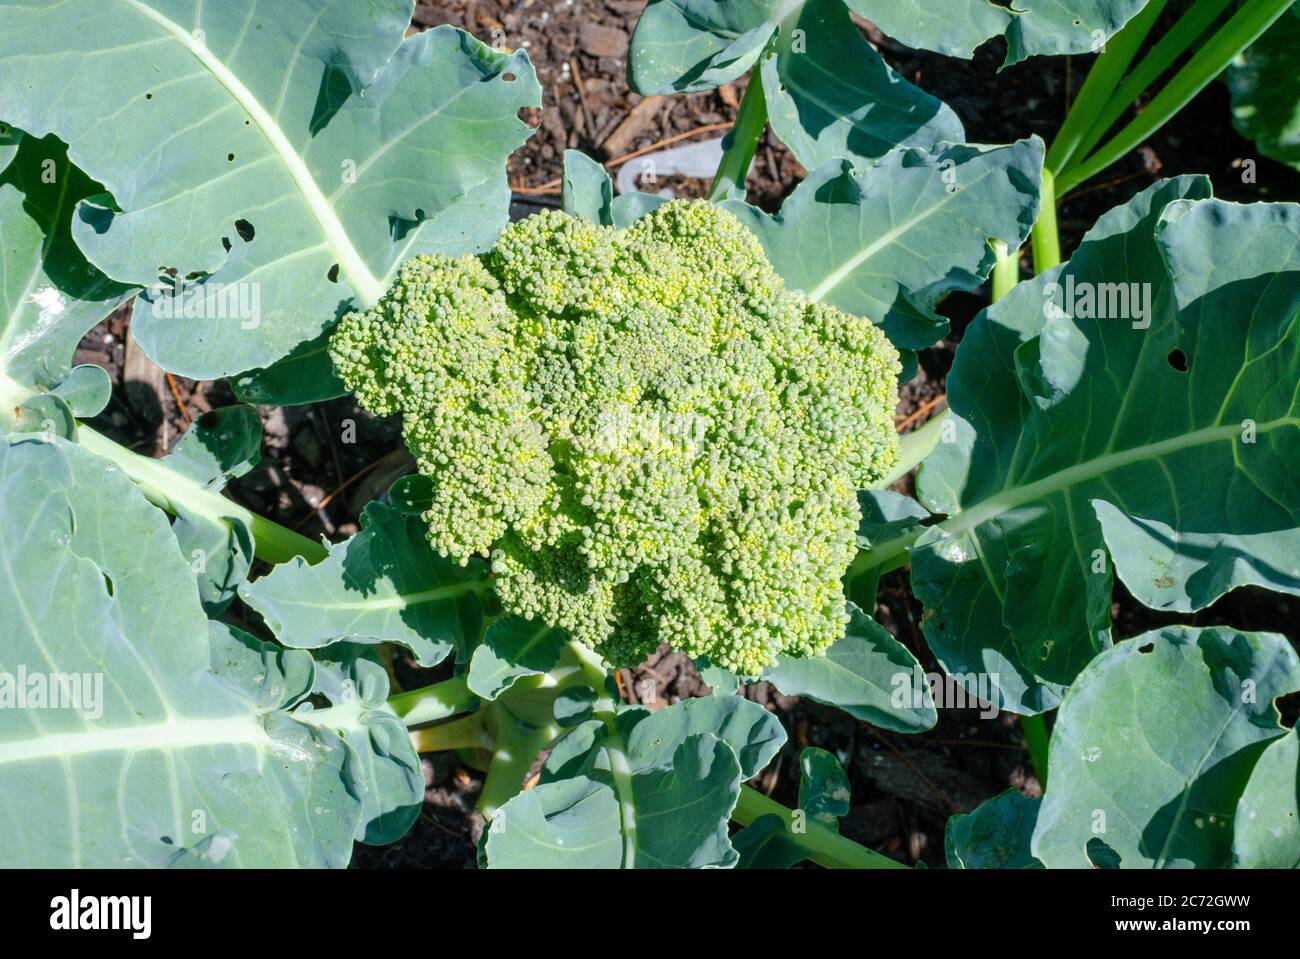 Primer plano de una cabeza de brócoli en crecimiento en el jardín utilizando sólo fertilizantes orgánicos y control de plagas Foto de stock